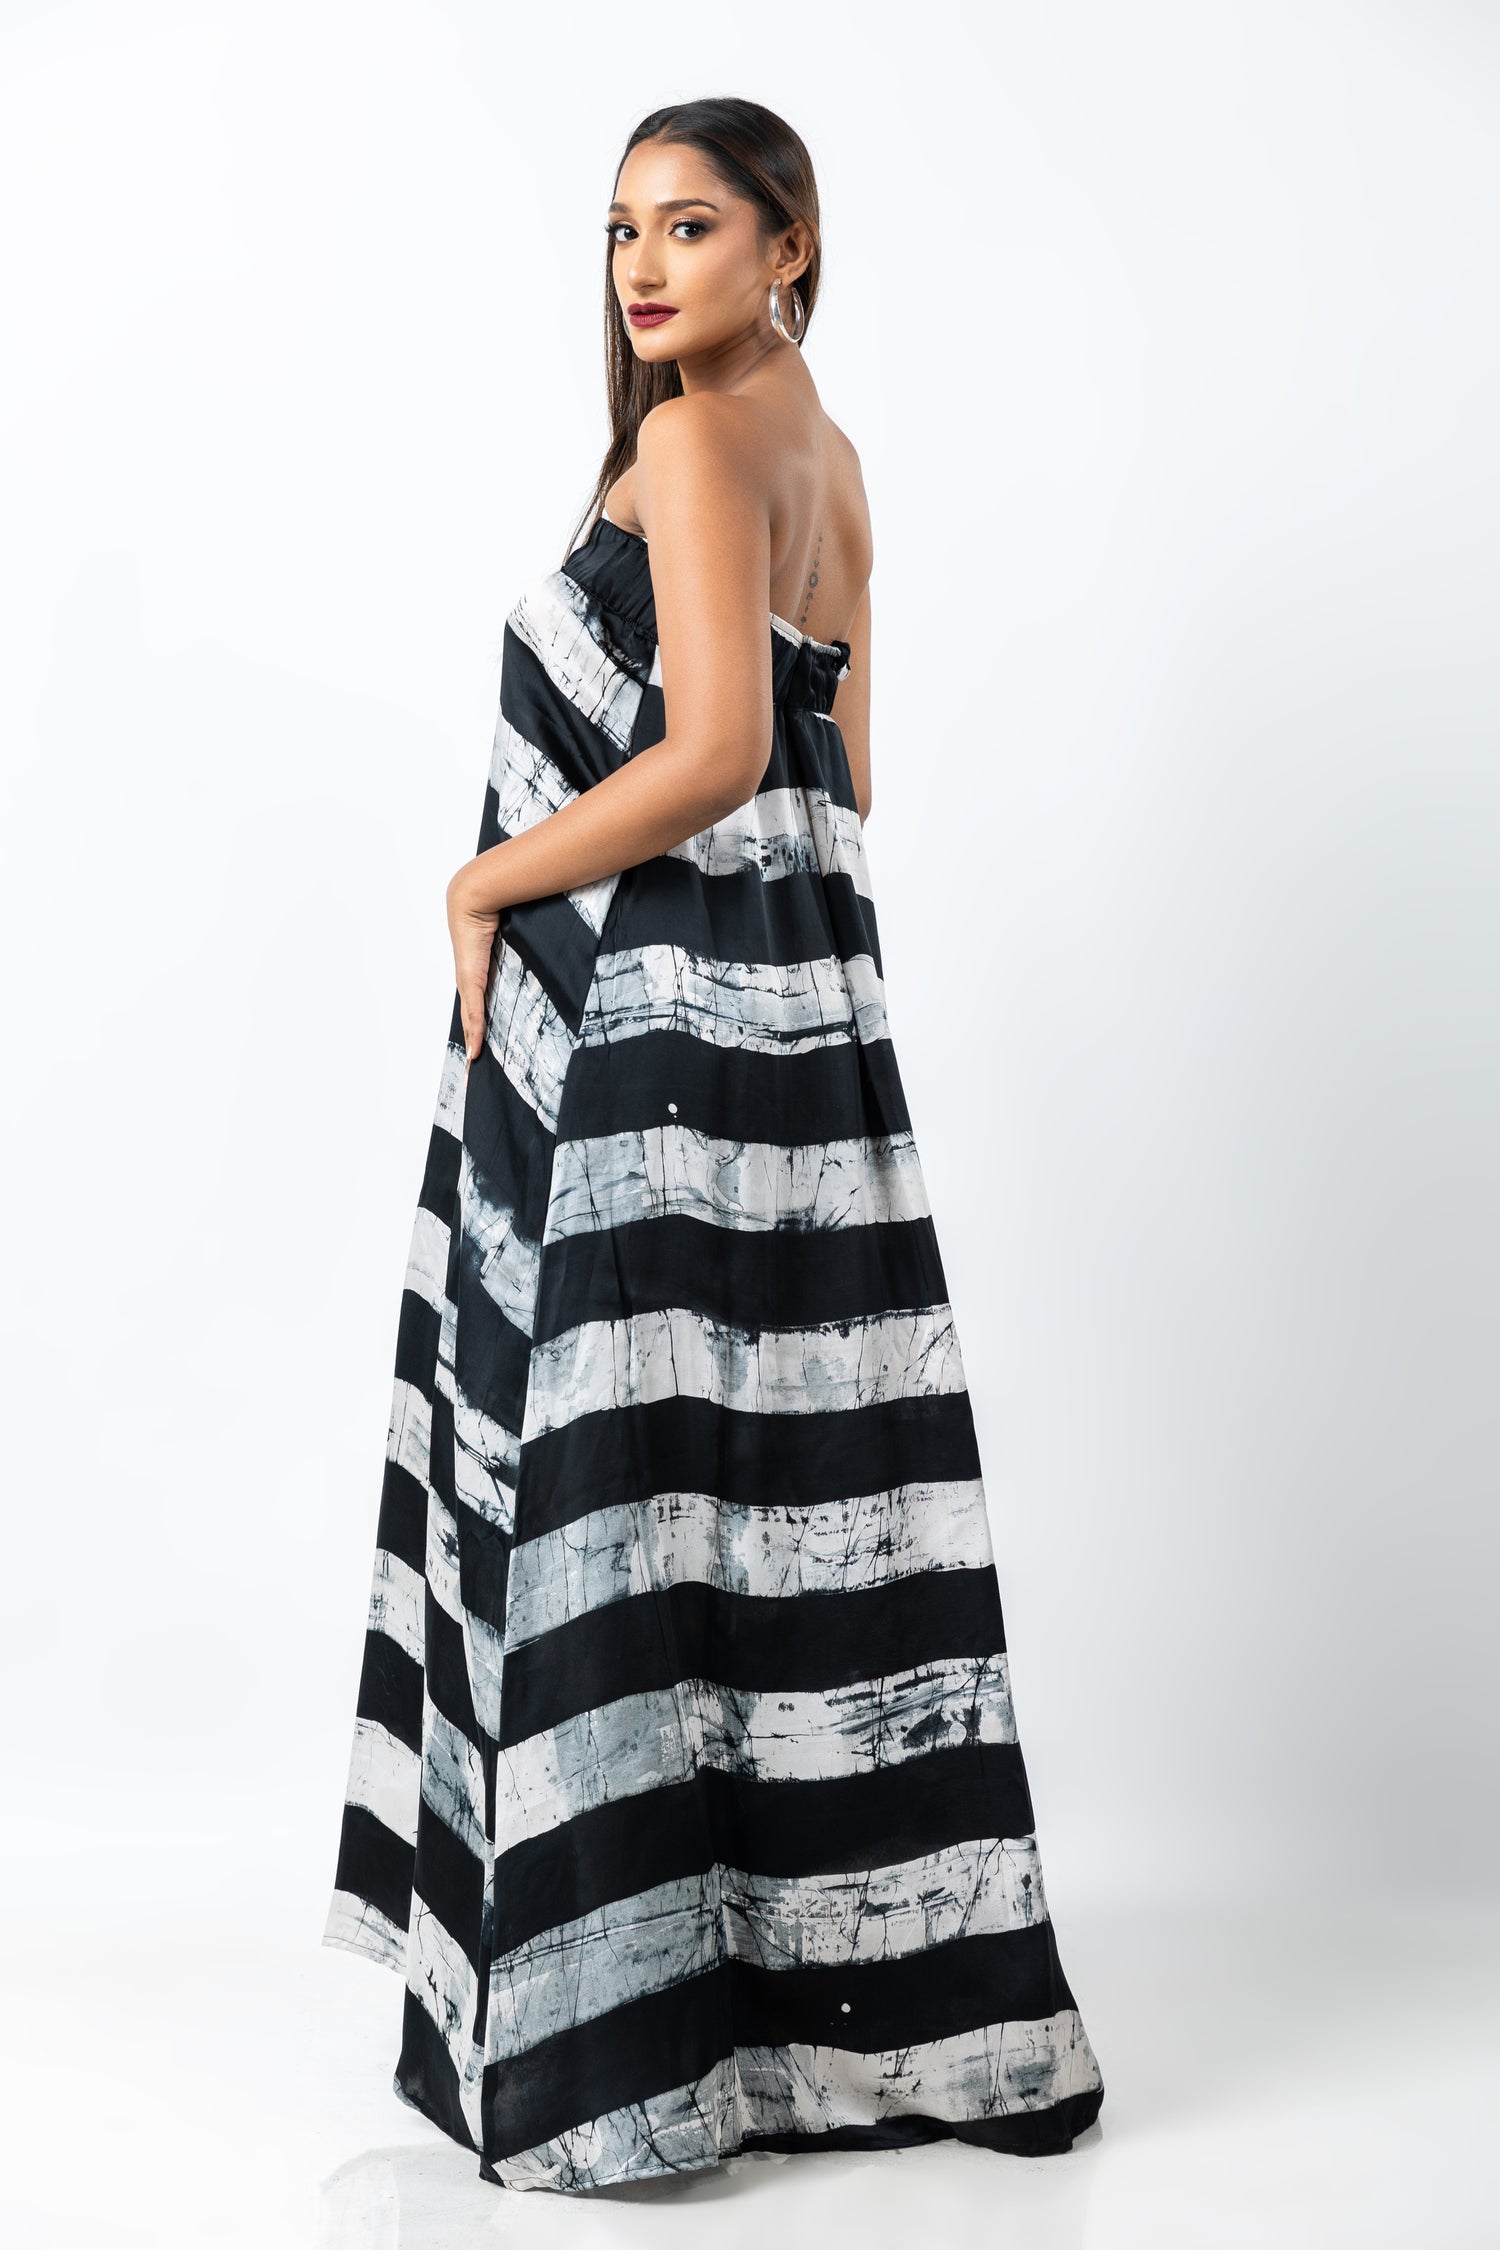 Ravishing Black Stripes Tube Dress